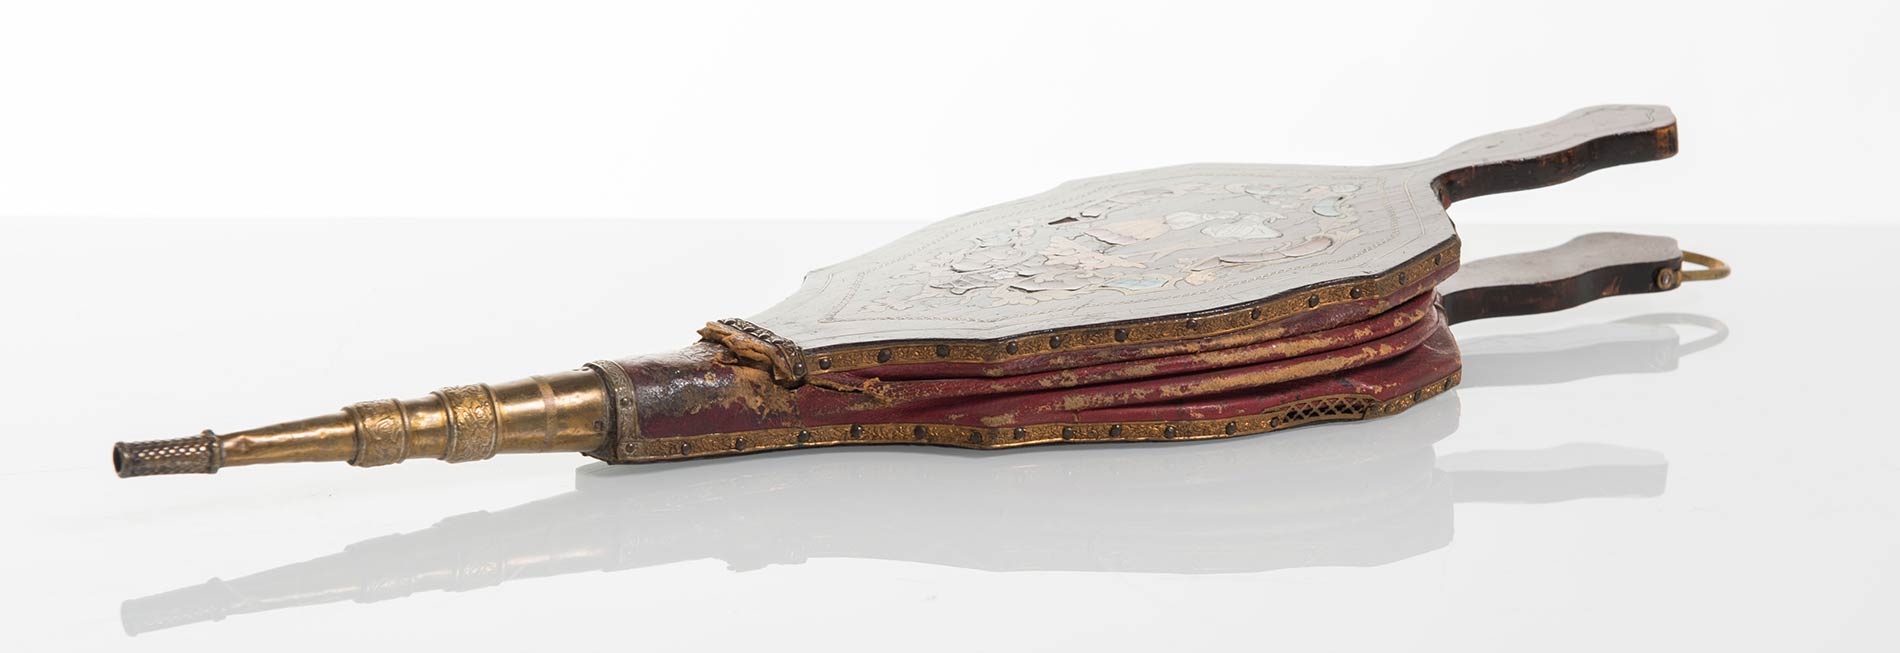 Mantice in cuoio e legno con intarsi in lacca, madreperla e ottone, XIX sec. - Image 2 of 3